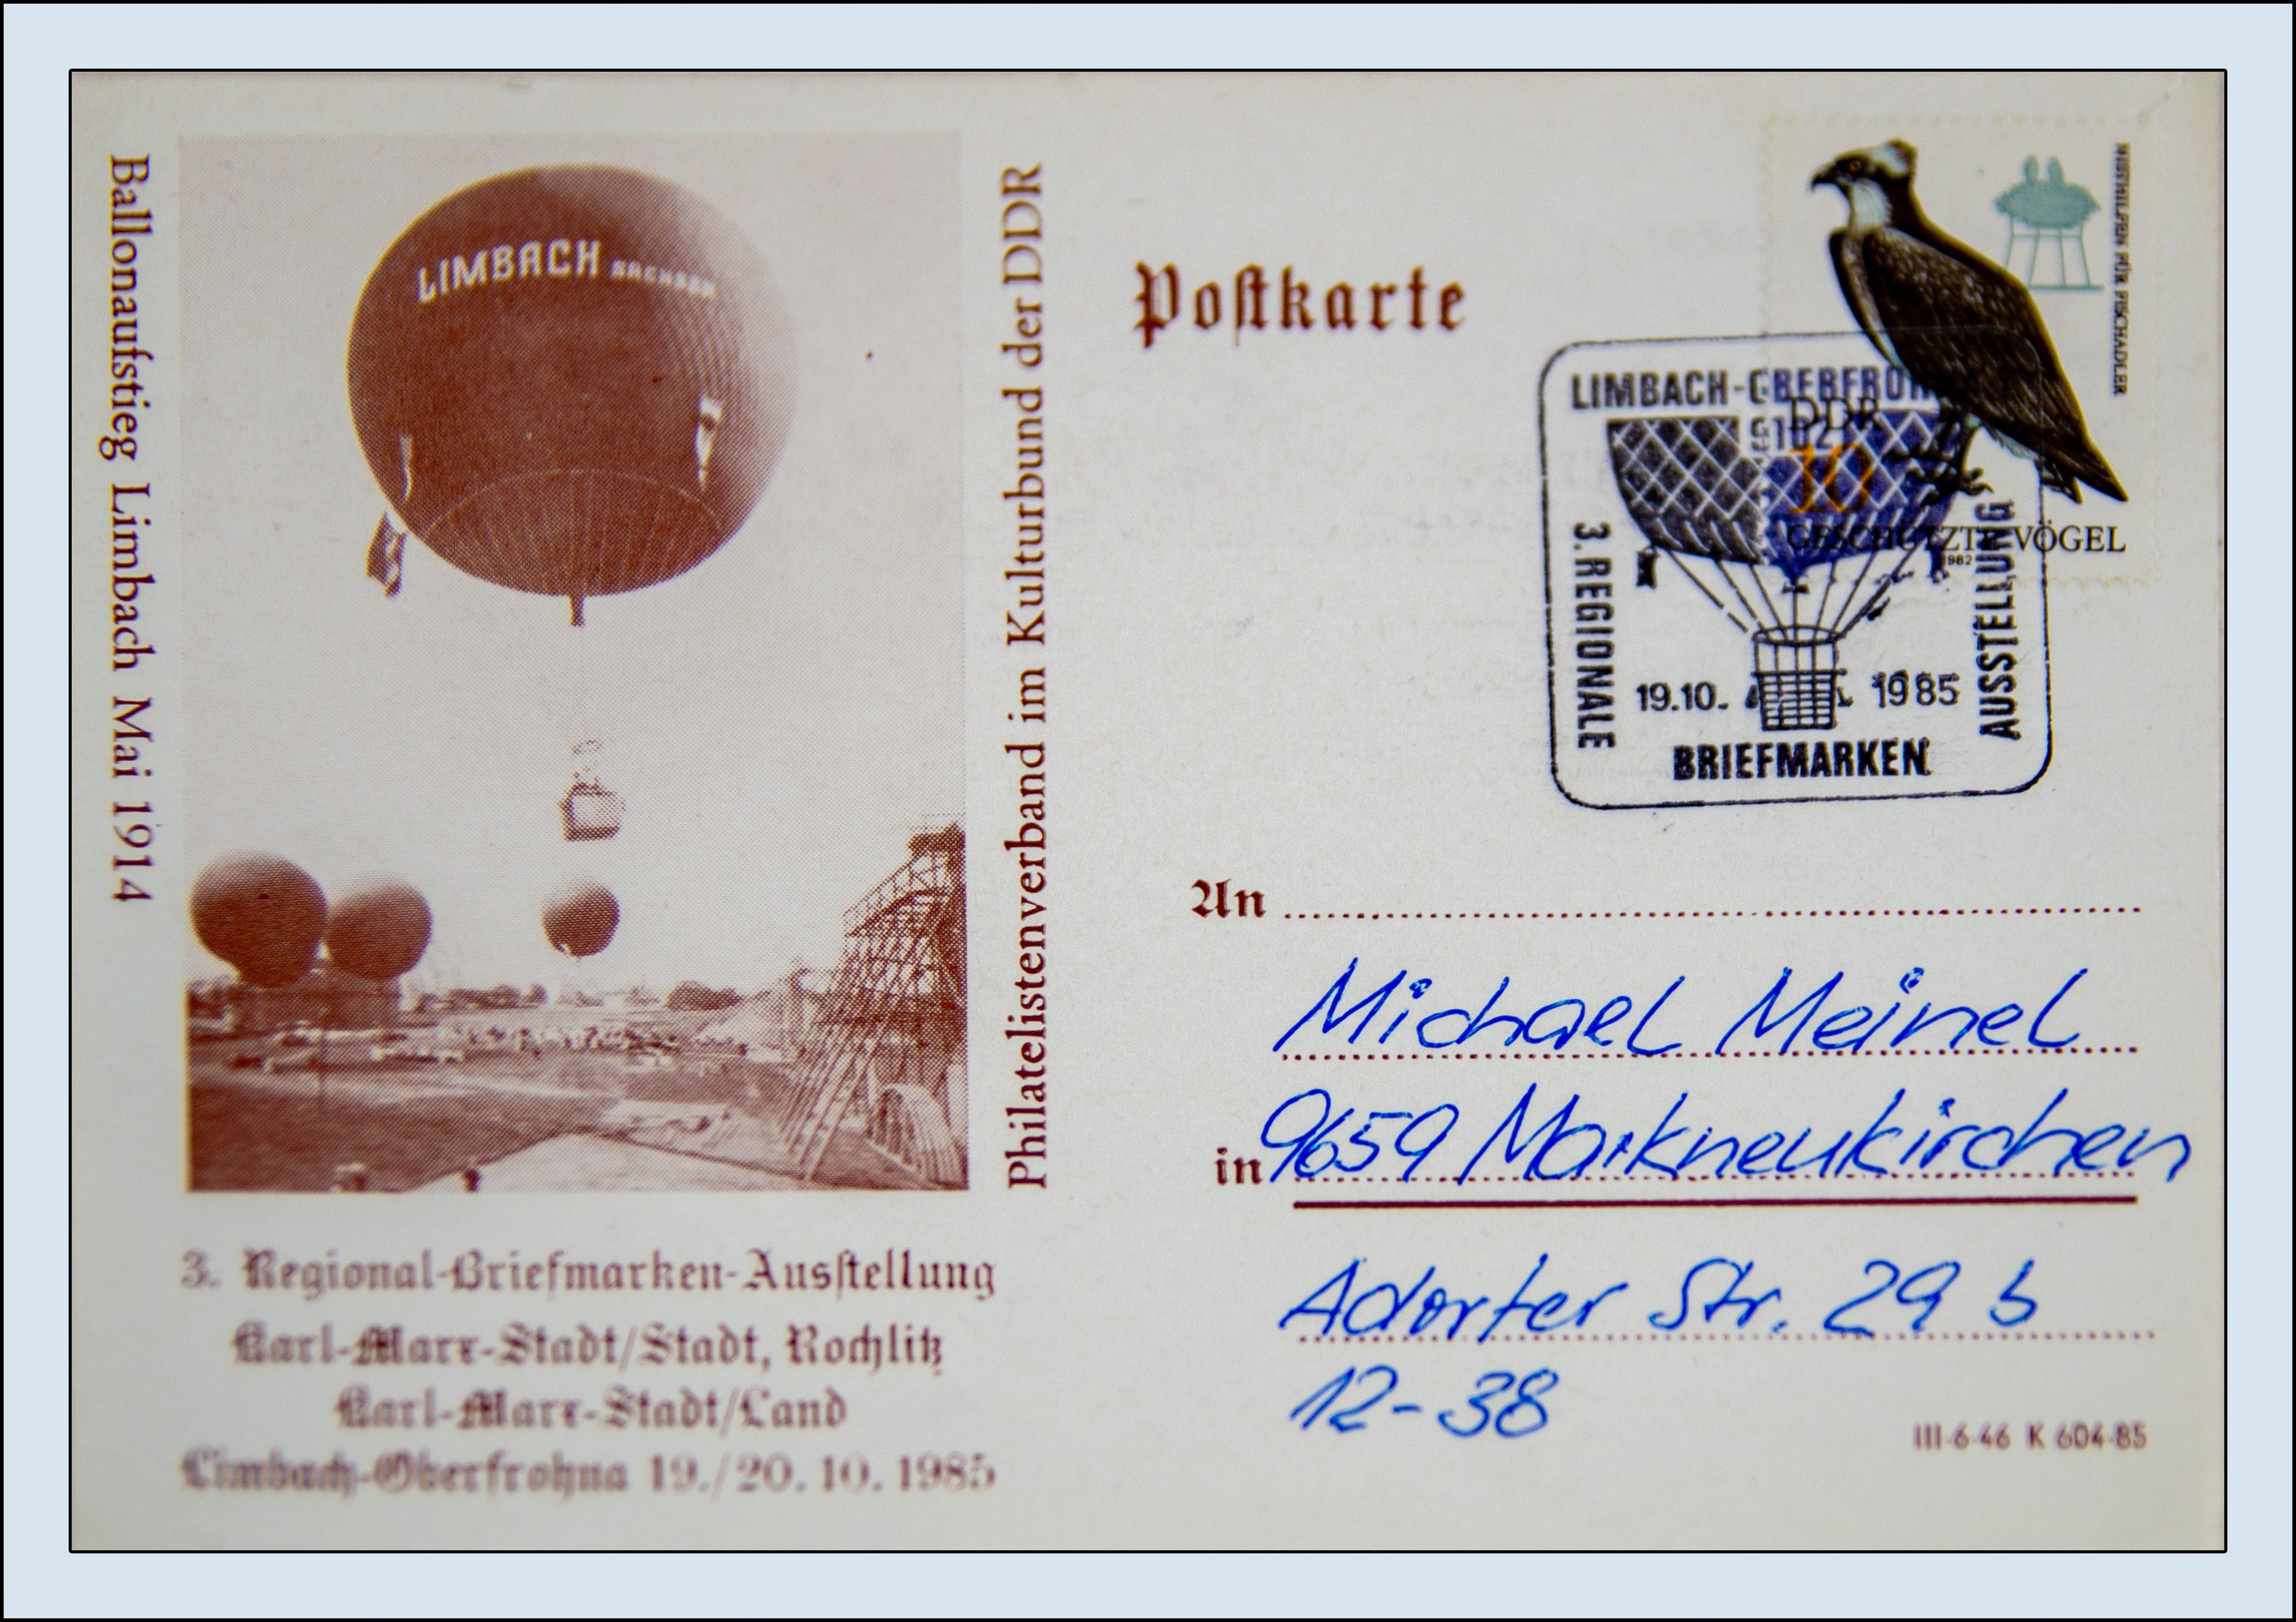 Ansichtskarte (Reprint) "Ballonaufstieg Limbach Mai 1914", Sonderstempel Limbach-Oberfrohna 1 3., Regionale Briefmarkenausstellung, Abbildung Ballon,  (Verkehrsmuseum Dresden CC BY-NC-SA)